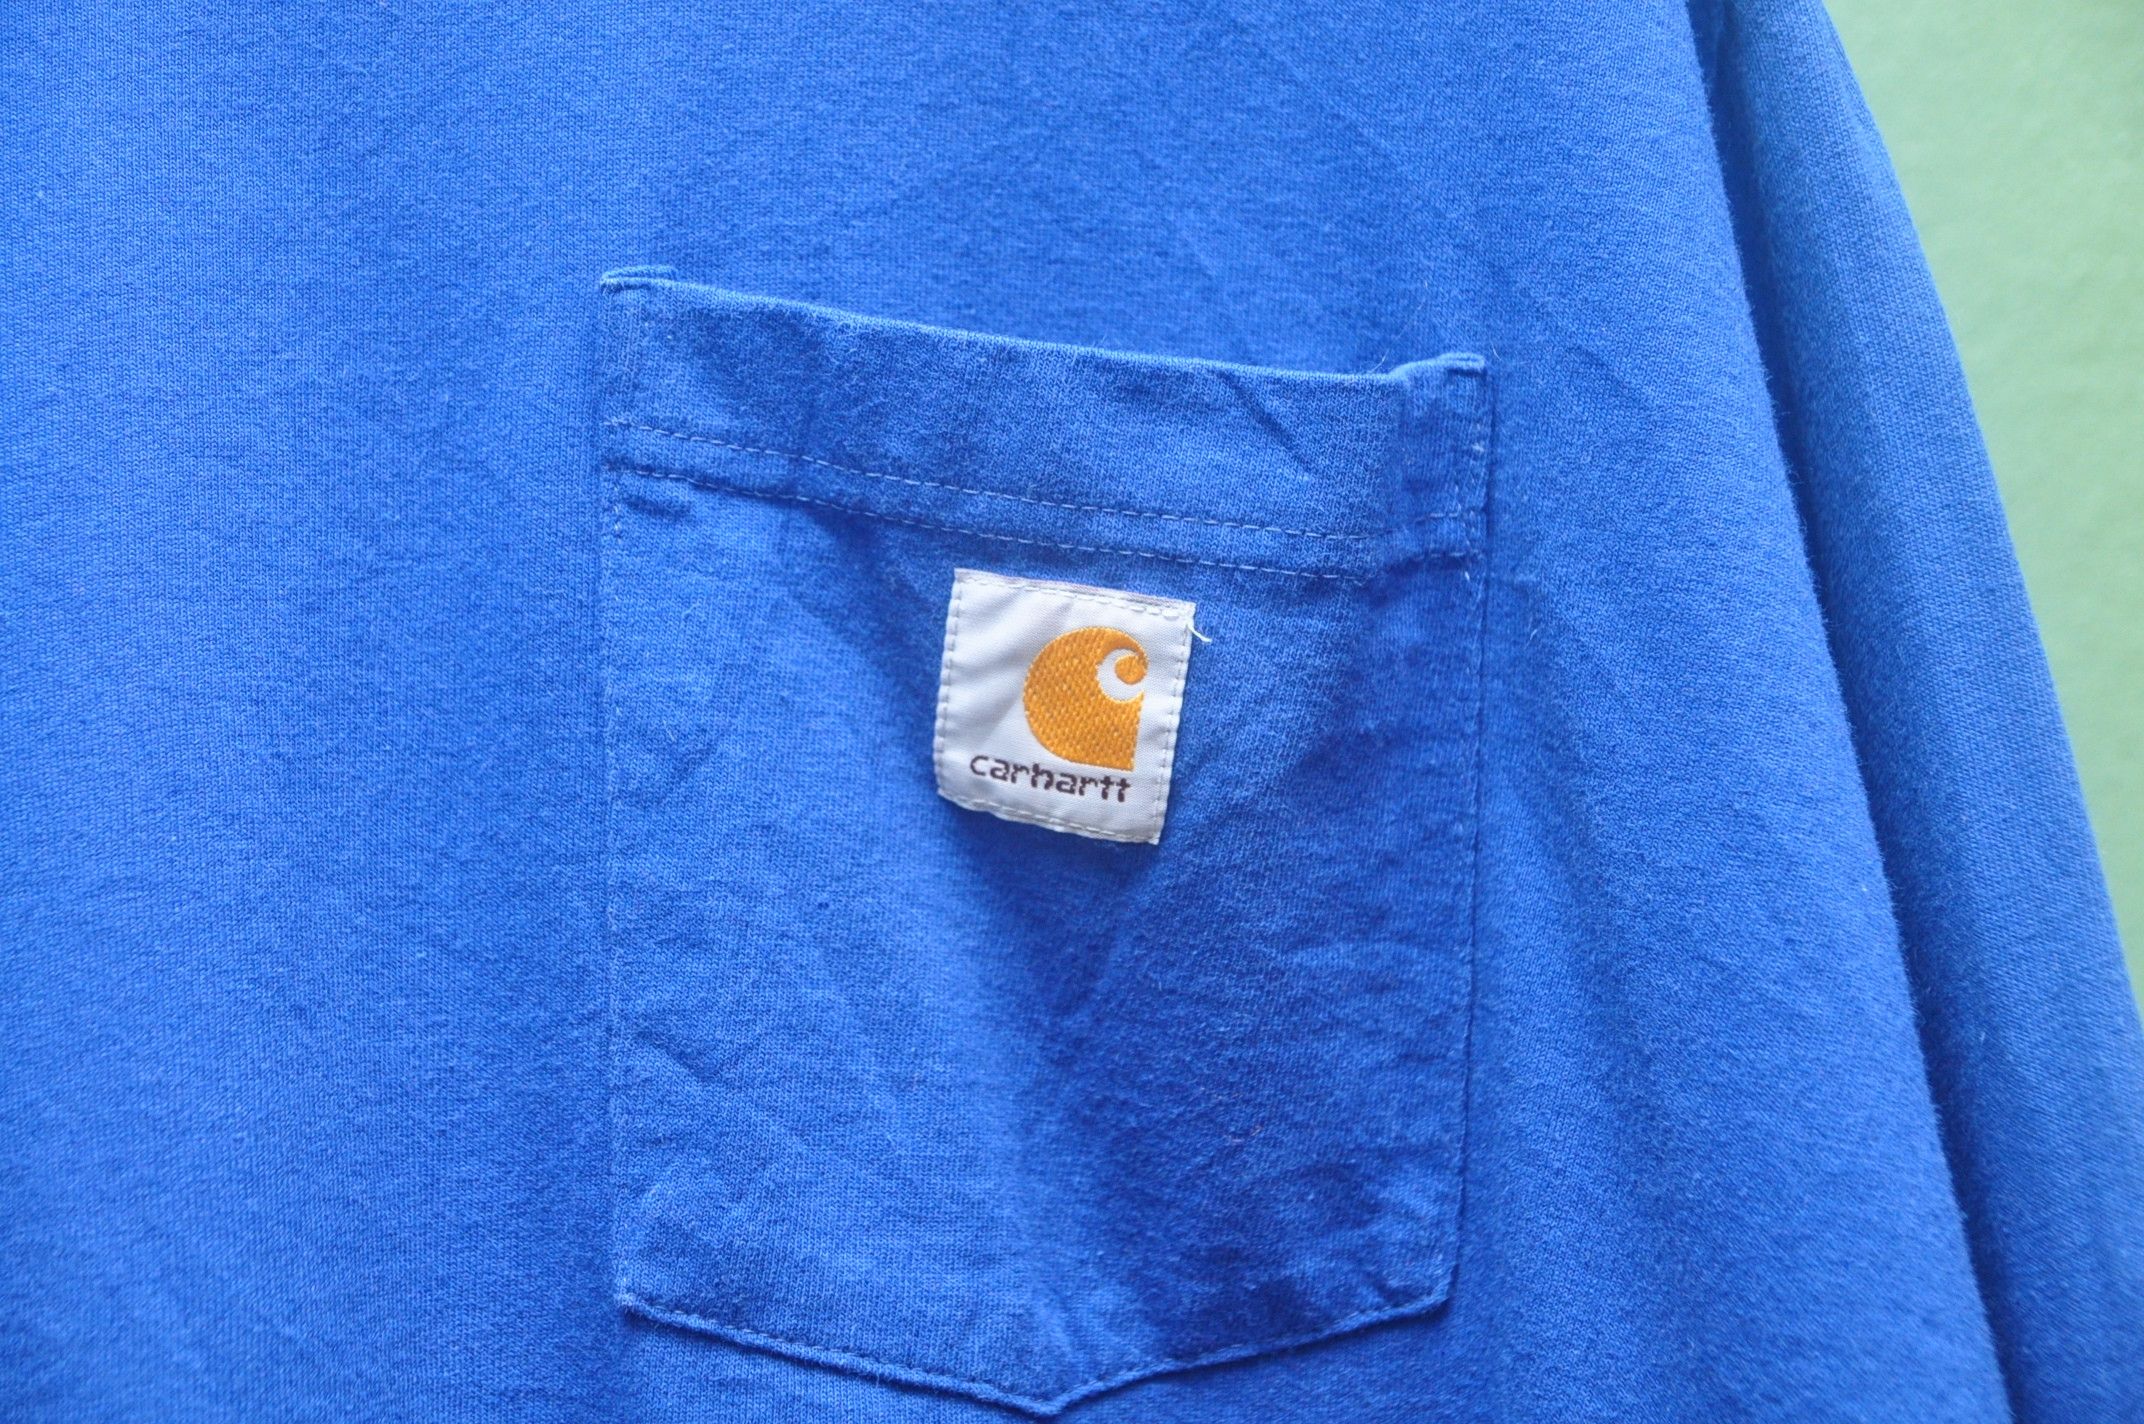 Carhartt Vintage Carhatt Long Sleeve Shirt Travis Scott Style Size US XXL / EU 58 / 5 - 4 Thumbnail